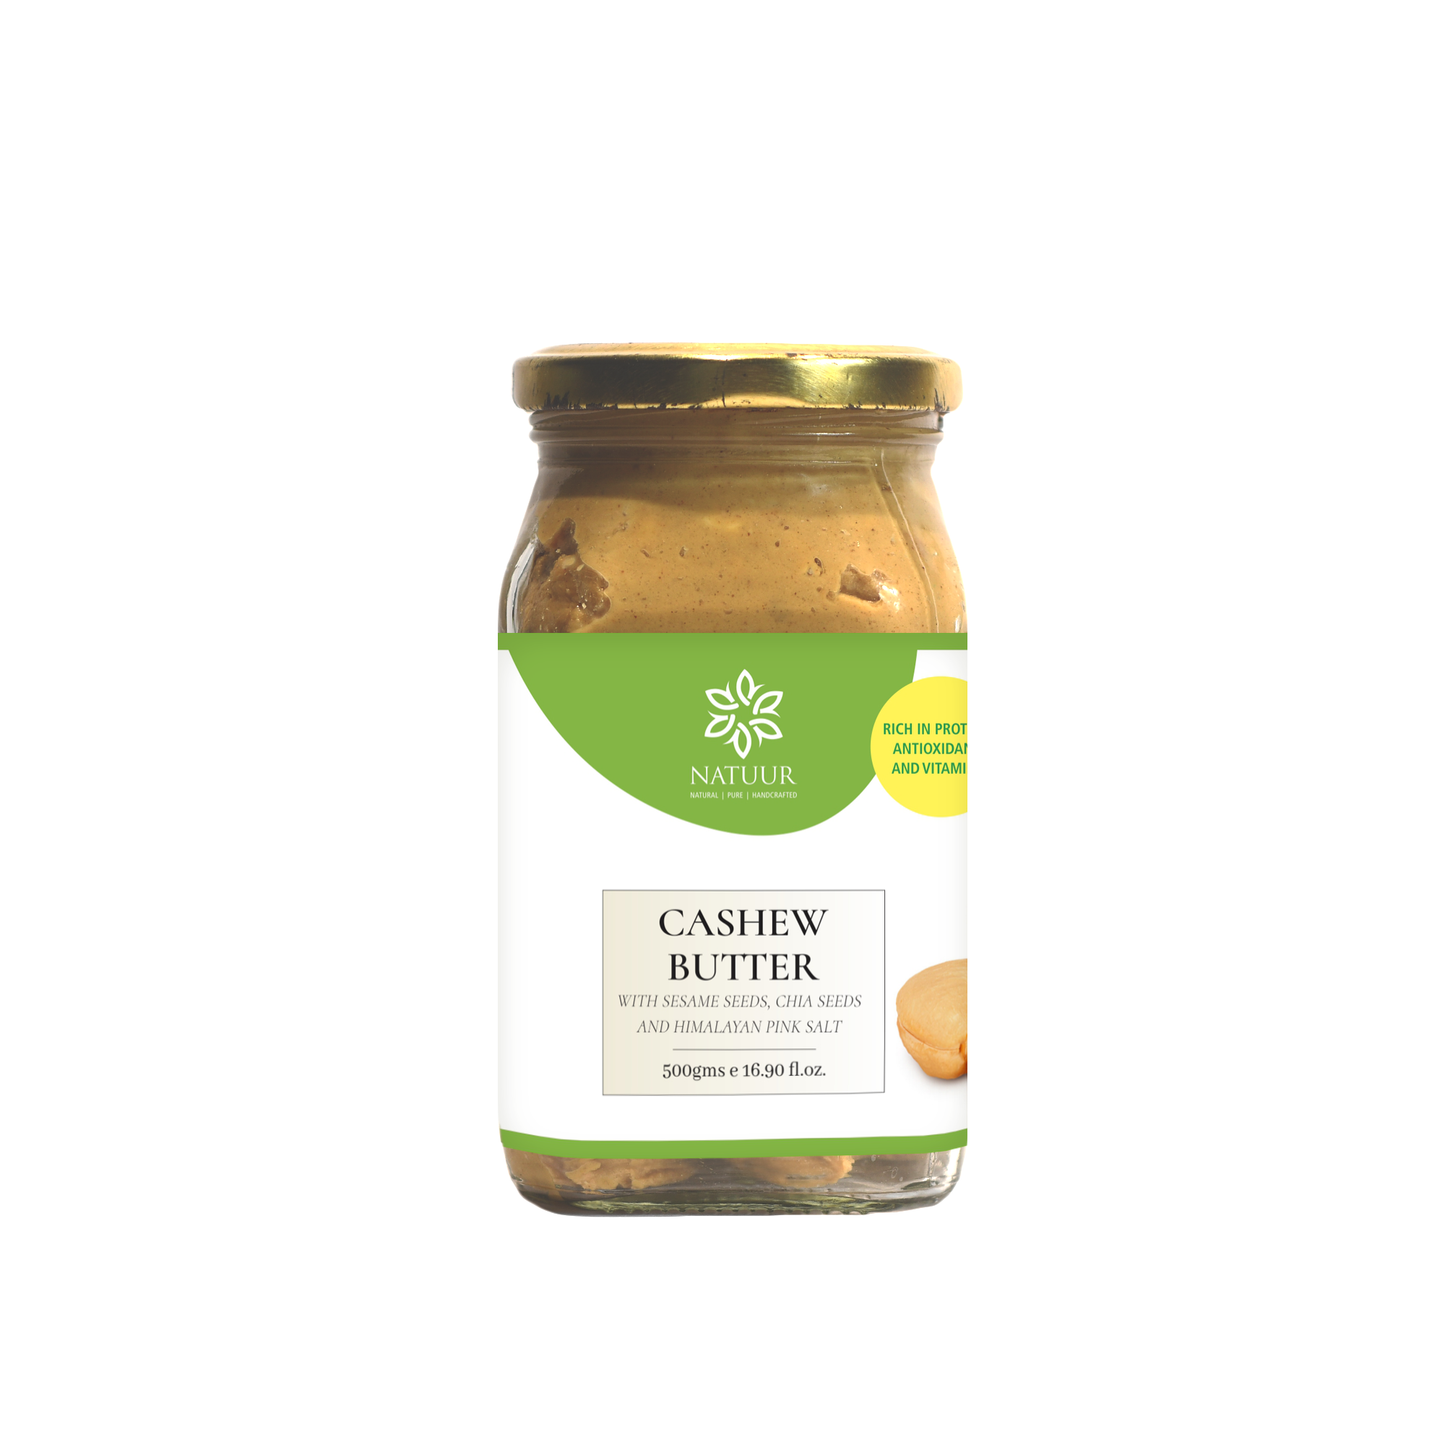 Cashew sesame seeds butter 500 gms